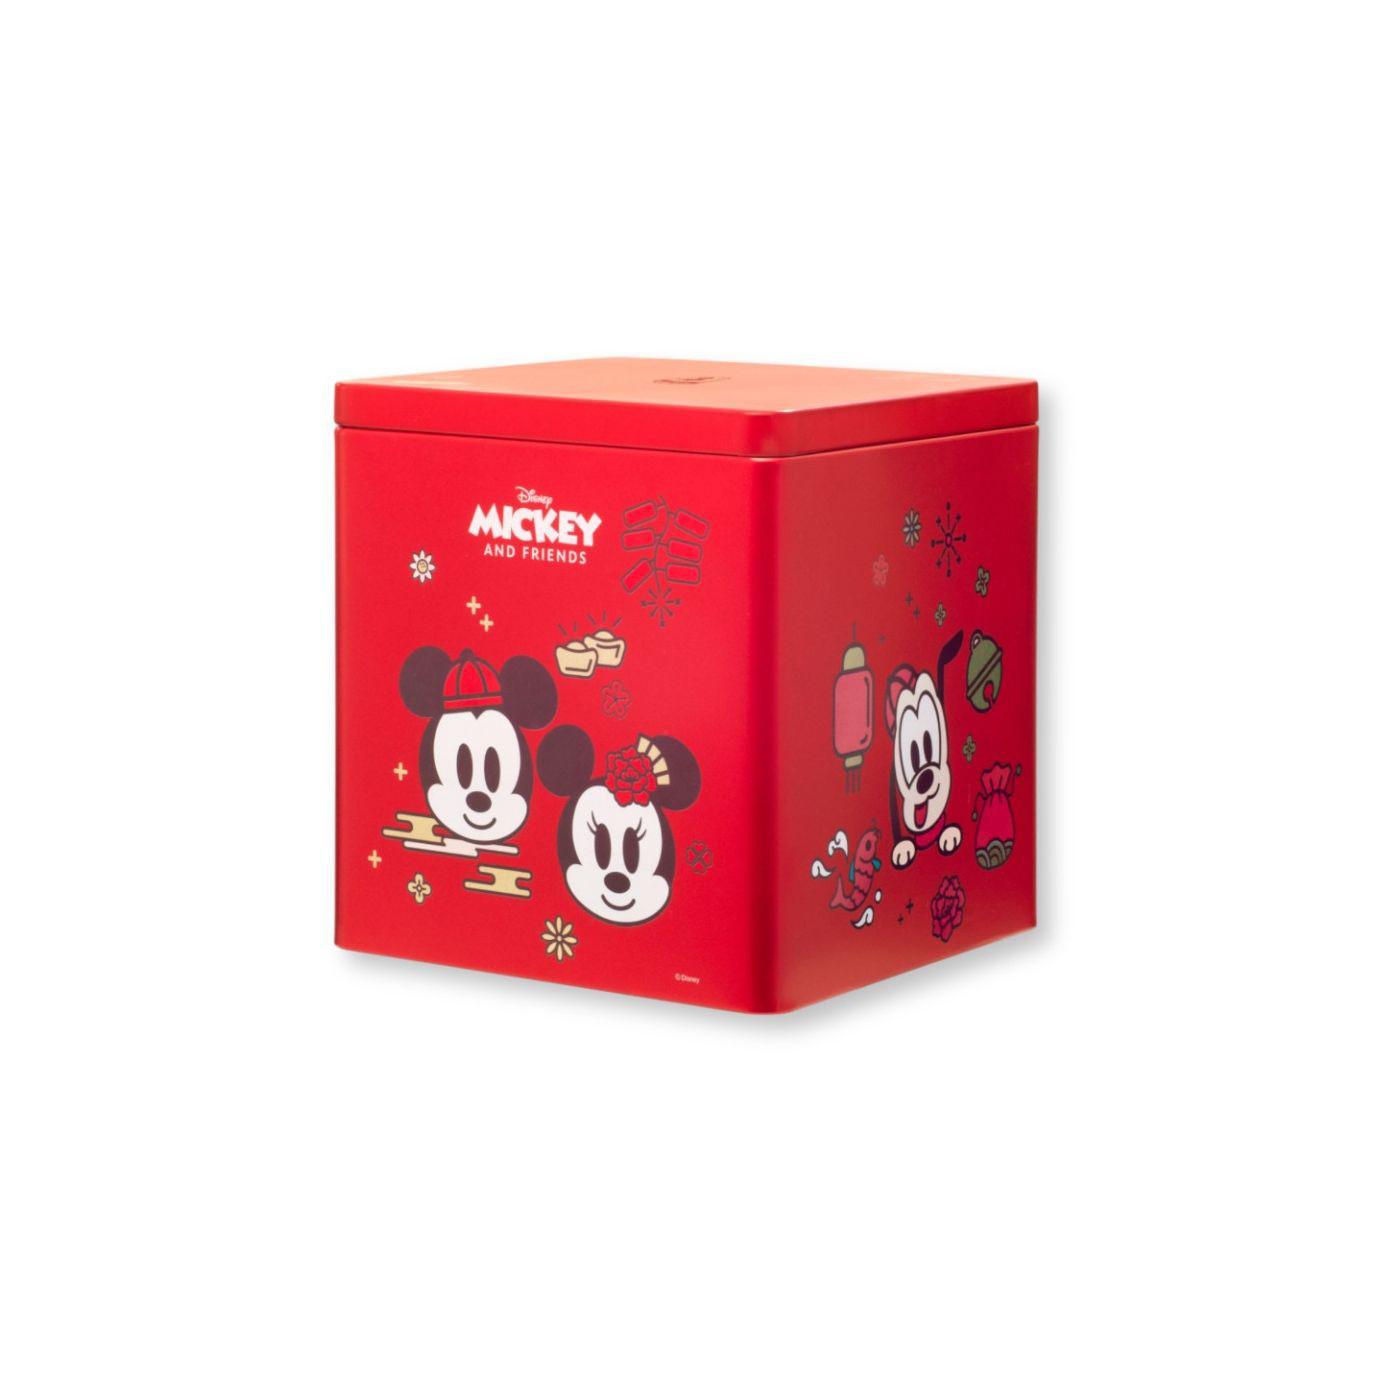 奇華餅家迪士尼米奇與好友系列賀年蛋卷禮盒$88。（圖片由相關機構提供）